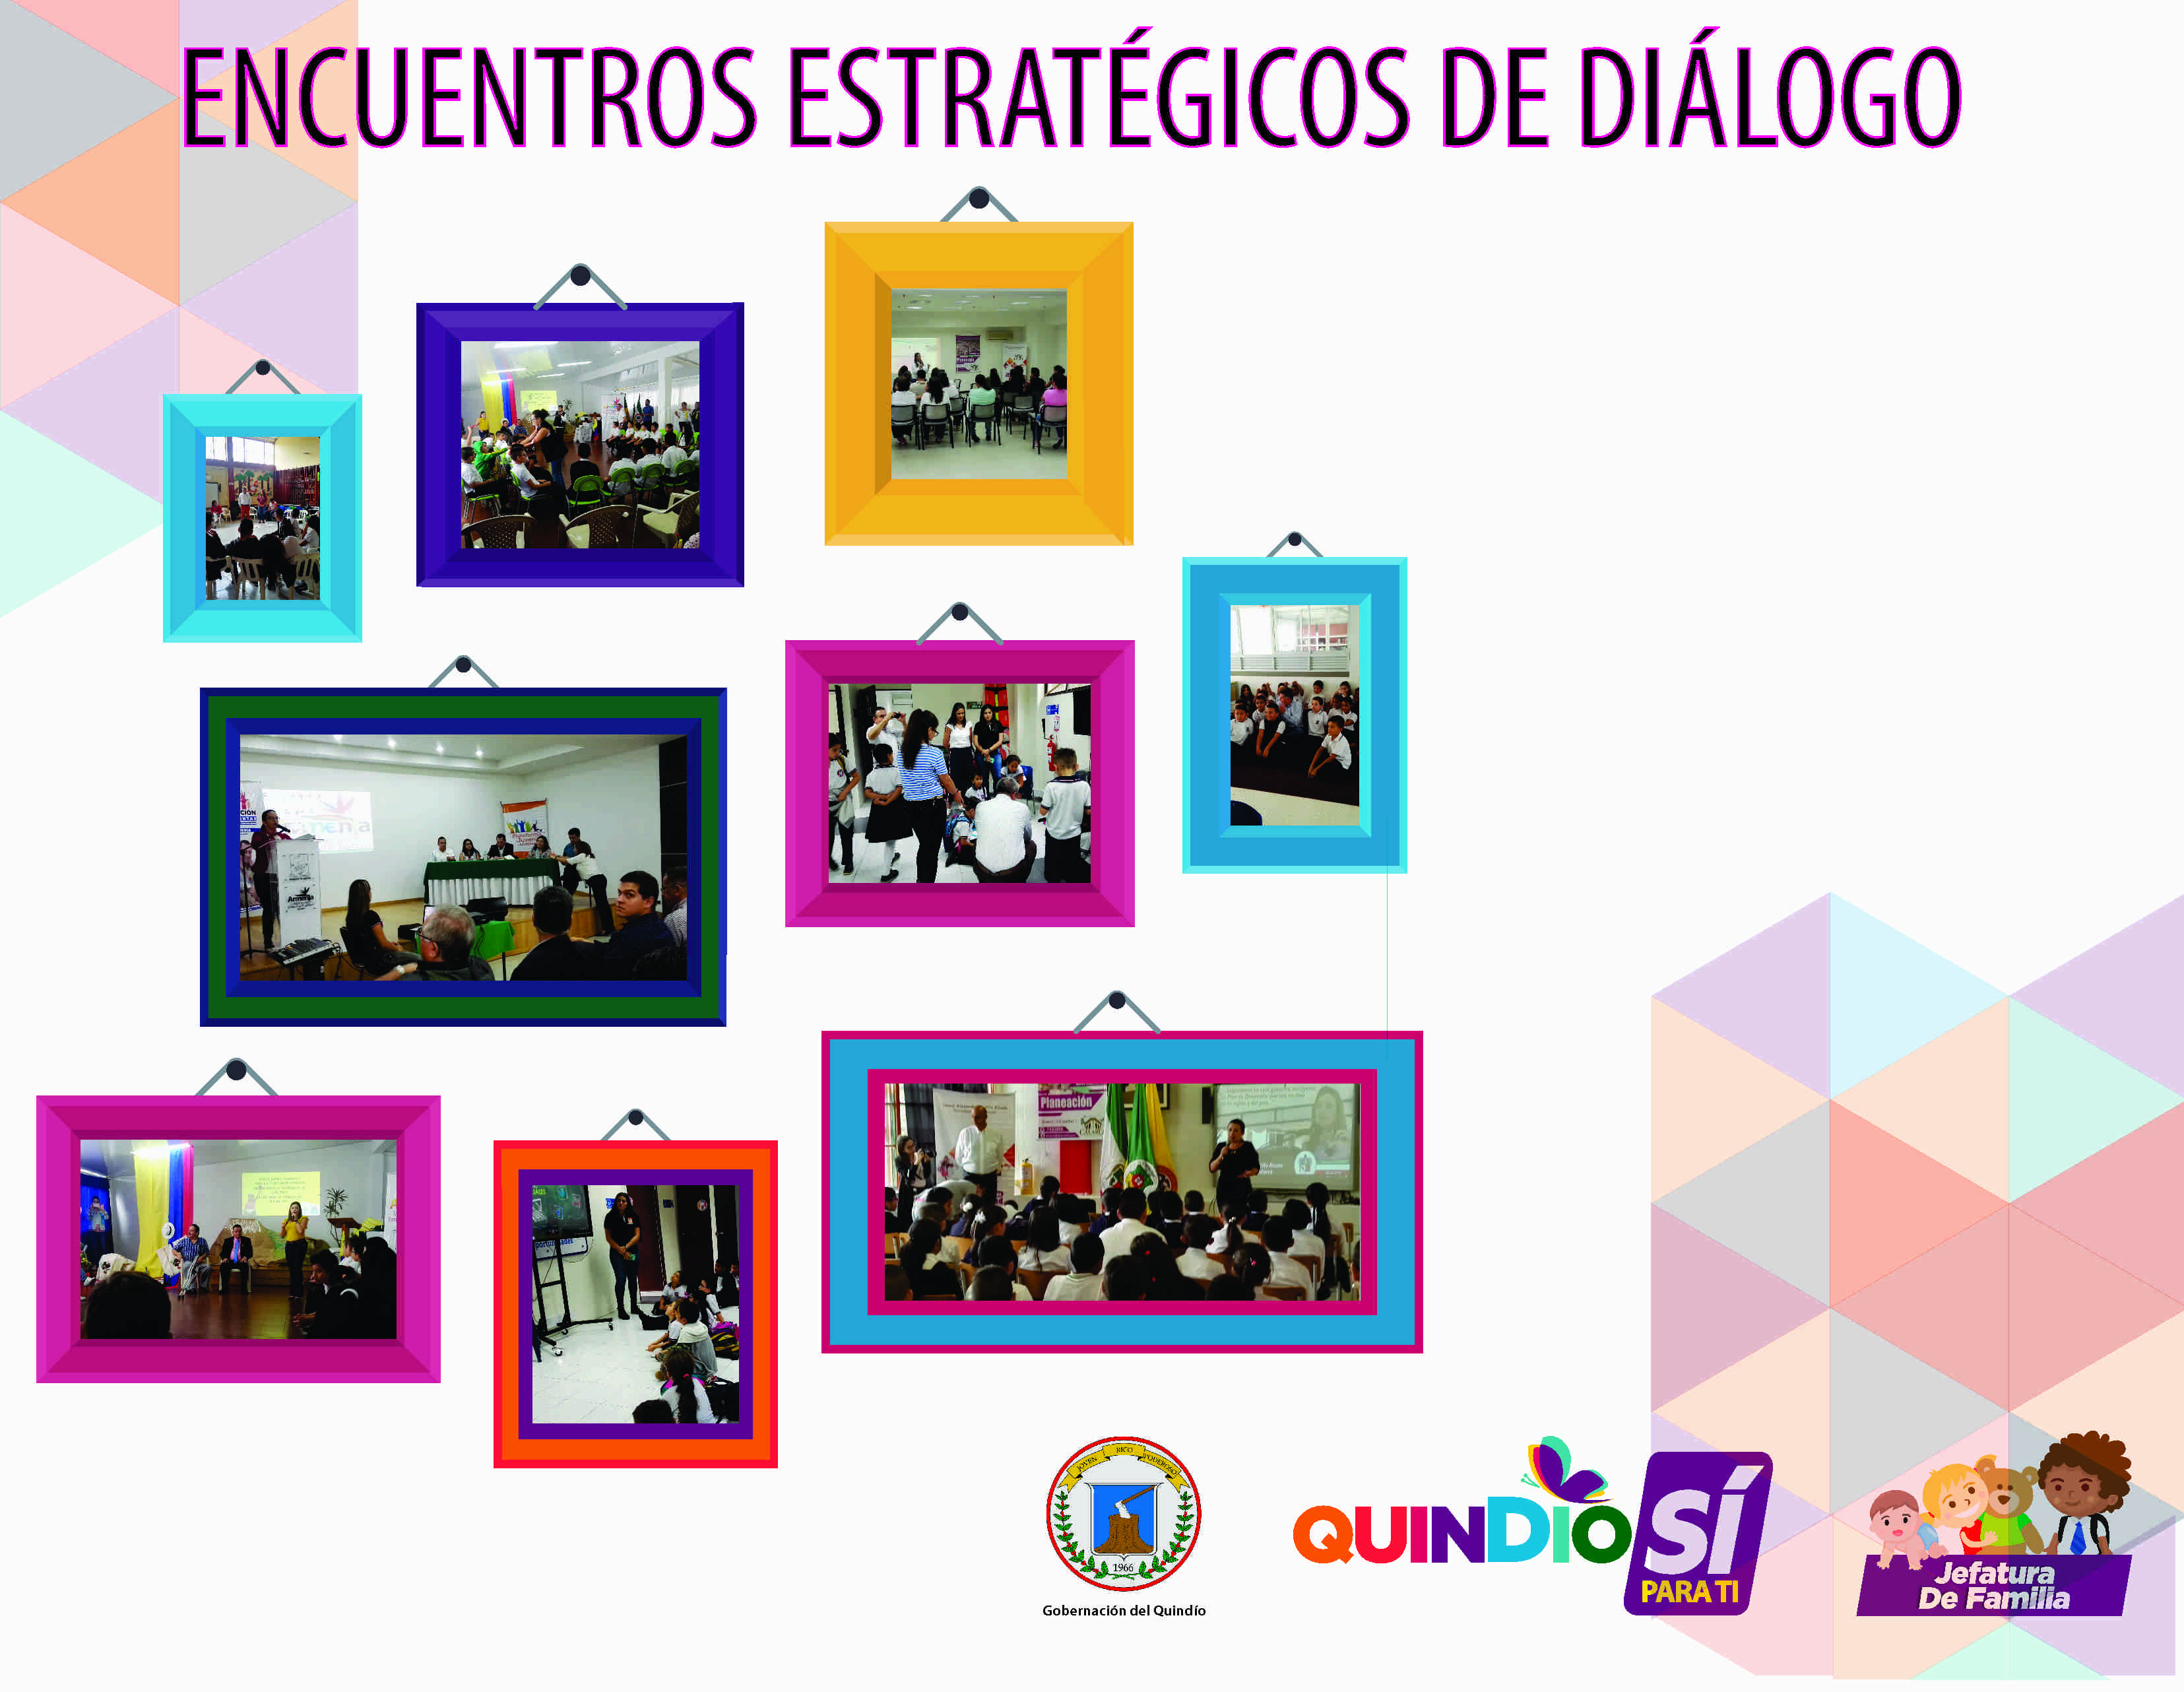 Encuentros_Estrategicos_de_Dialogo_1.jpg - 1.37 MB